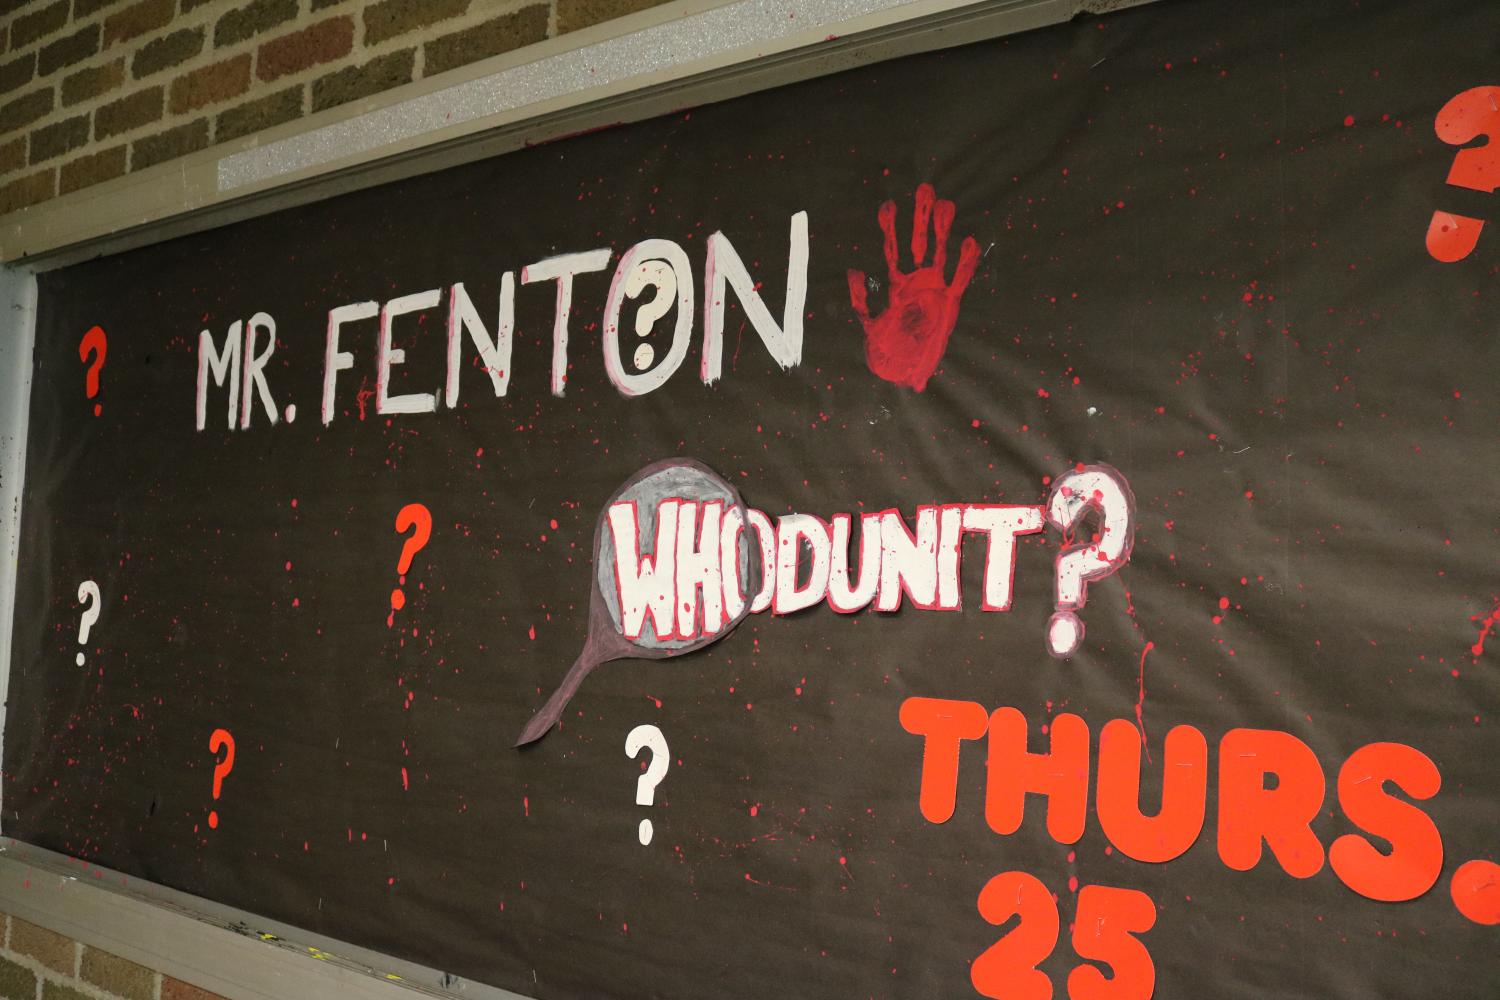 Mr. Fenton contest postponed